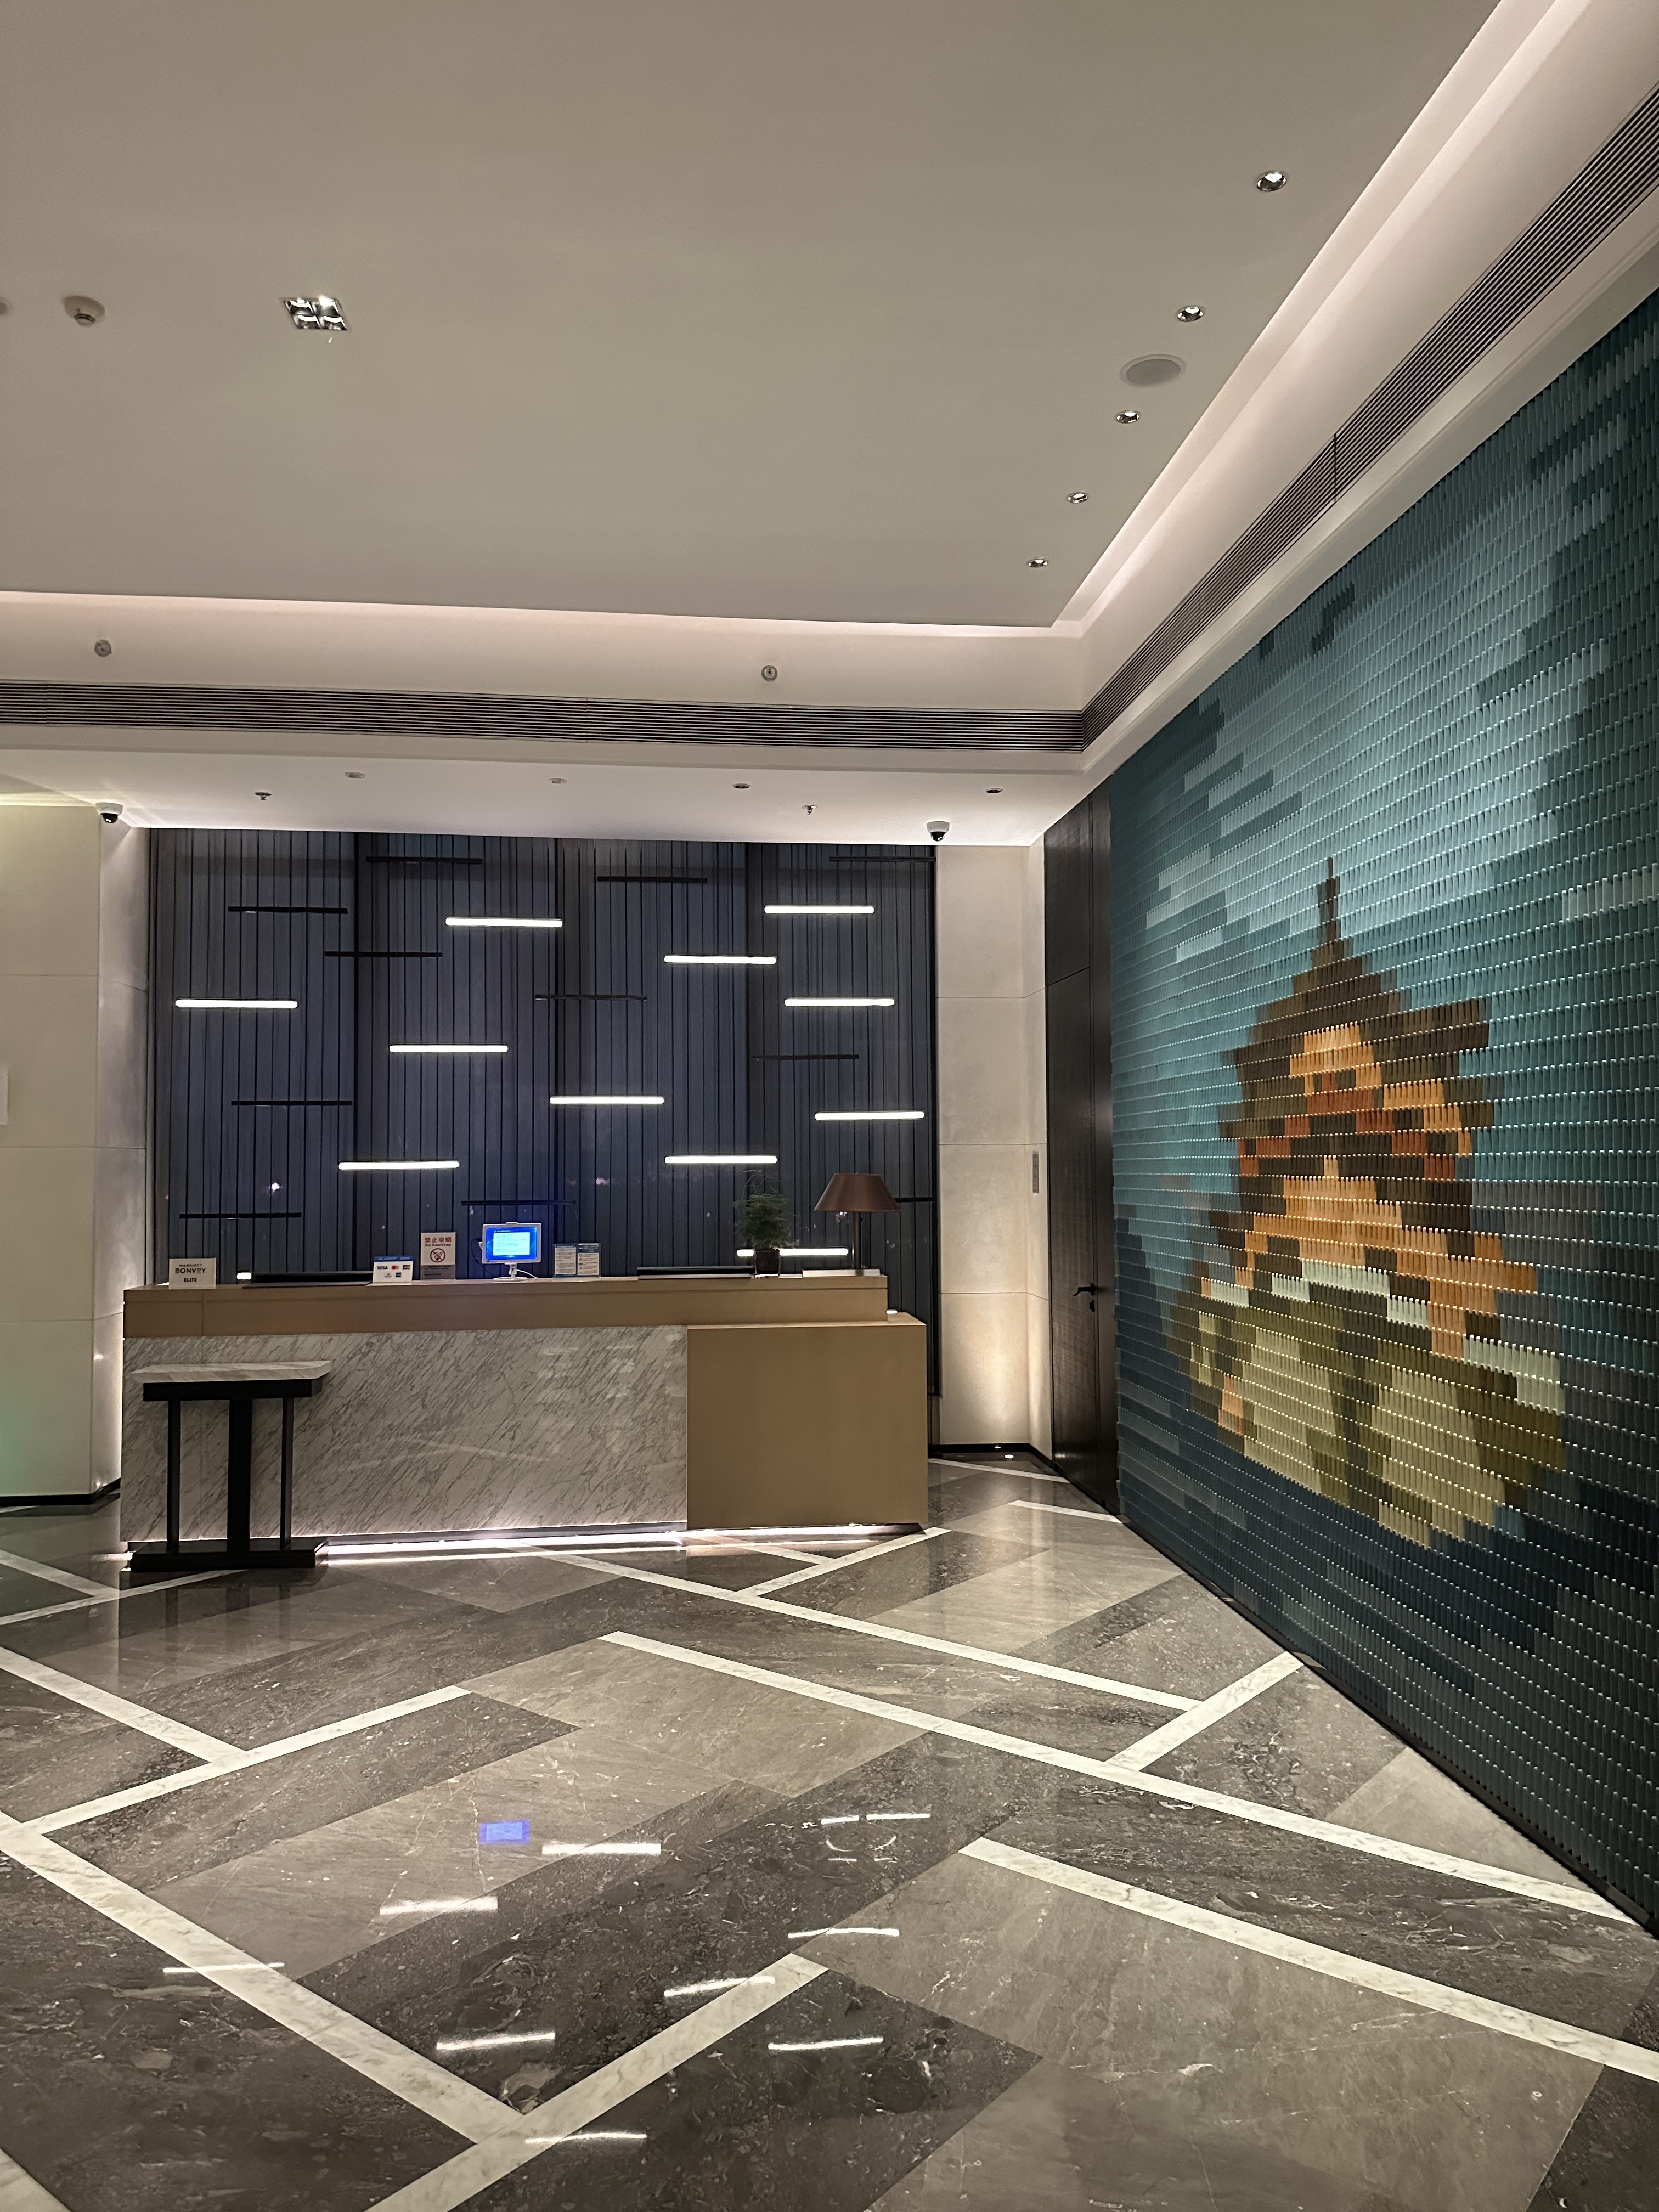 2024 #8 | ¶Ƶ Delta Hotels Xi'anɽûİֻ